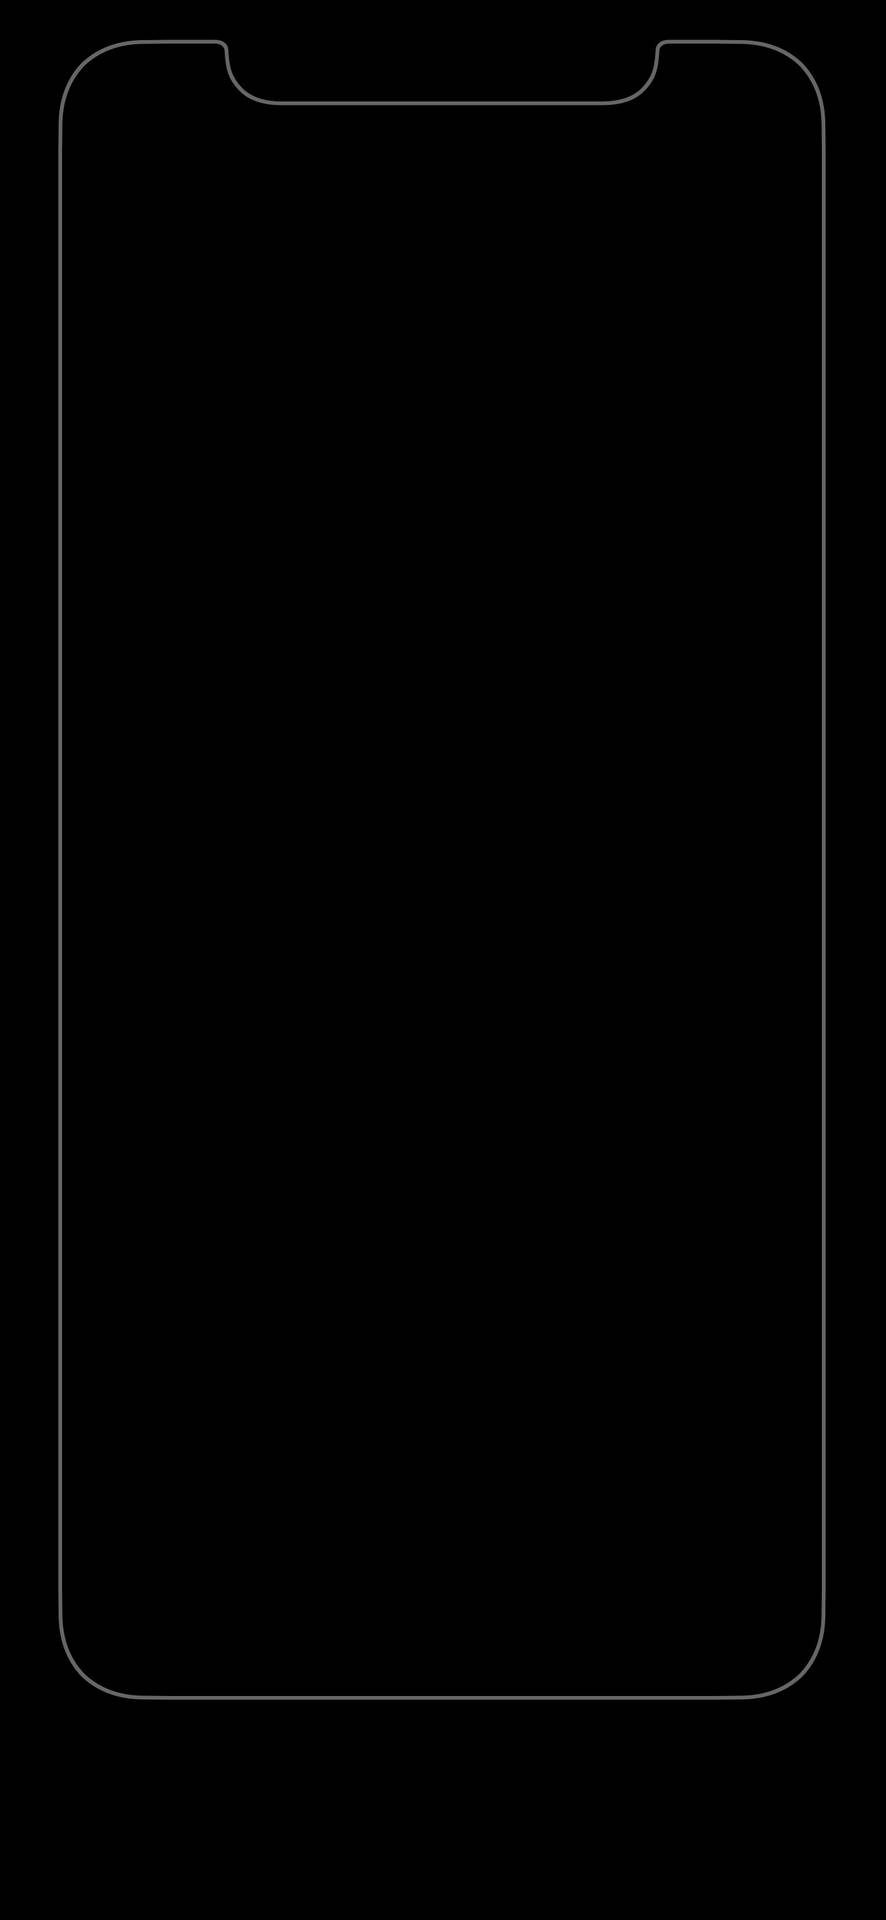 Solid Black 4k Phone Outline Background